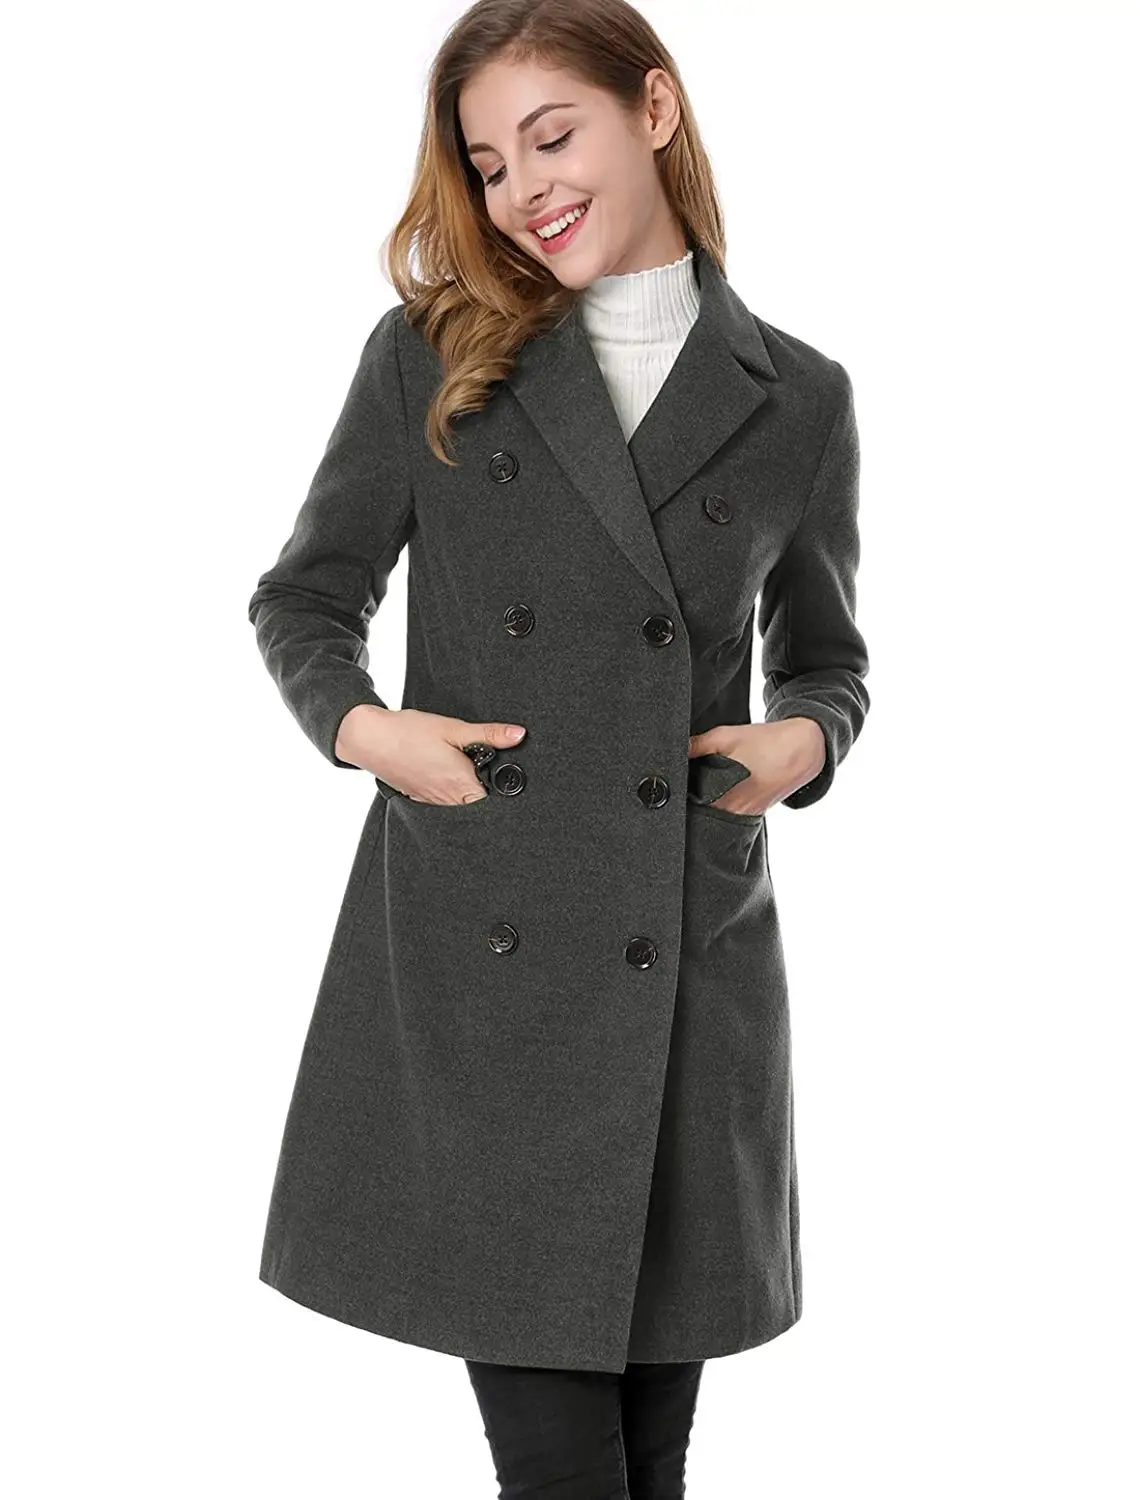 ZOGAA женская одежда пальто женское Новое модное весеннее пальто с отложным воротником однотонное двубортное приталенное шерстяное пальто с карманами - Цвет: Серый